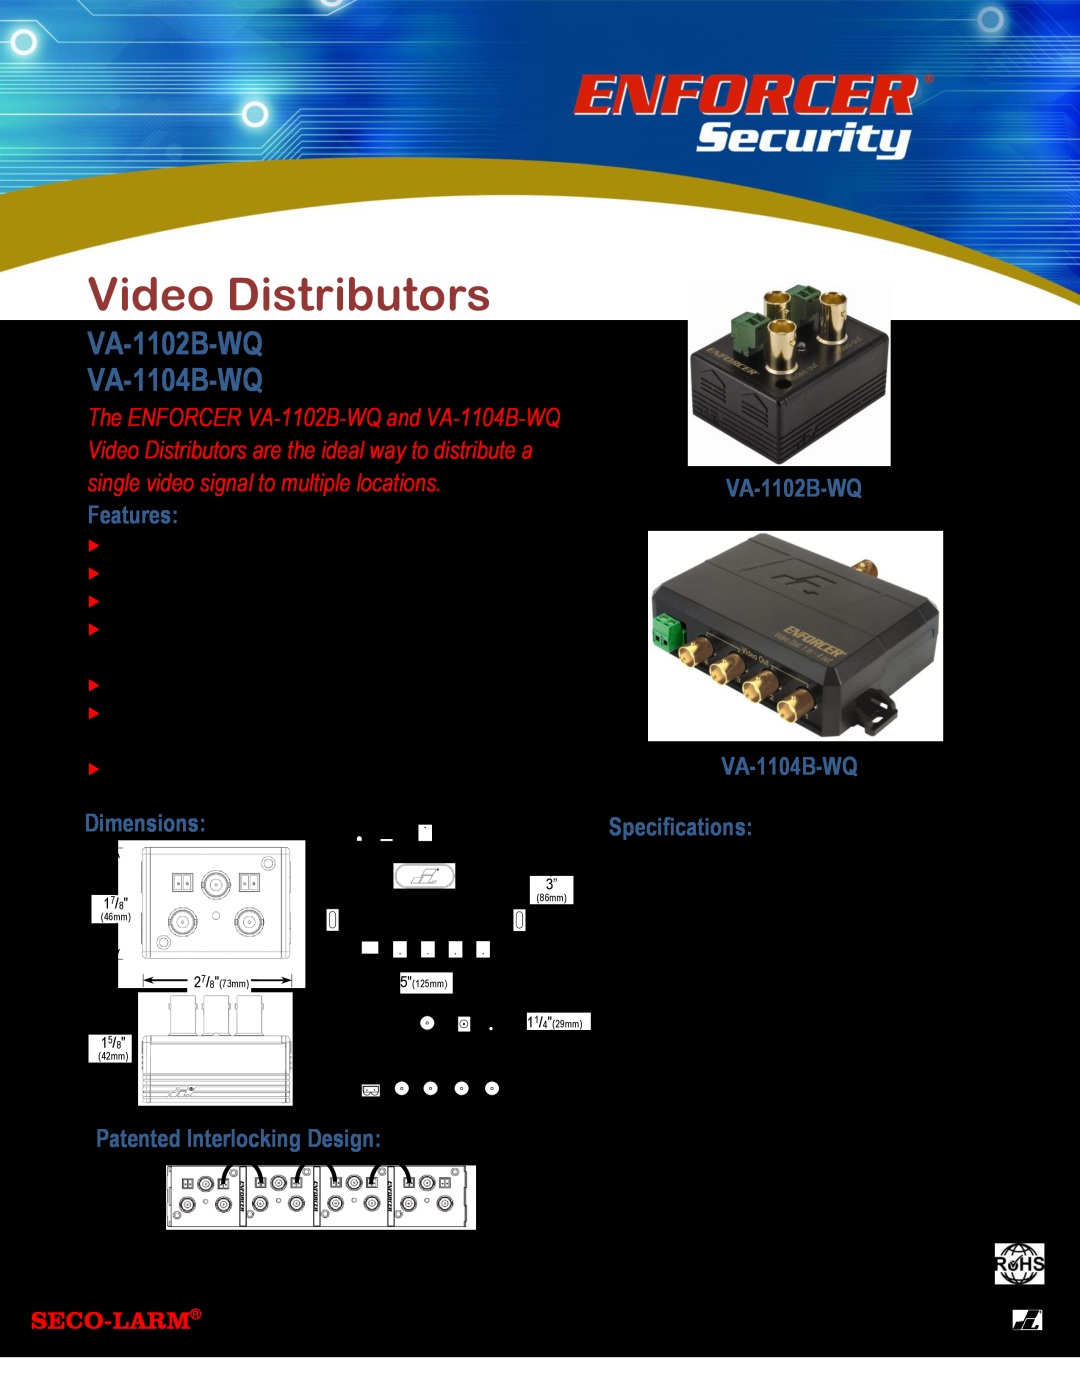 SECO-LARM USA specifications Video Distributors, Features, VA-1102B-WQ VA-1104B-WQ, Dimensions, Specifications 